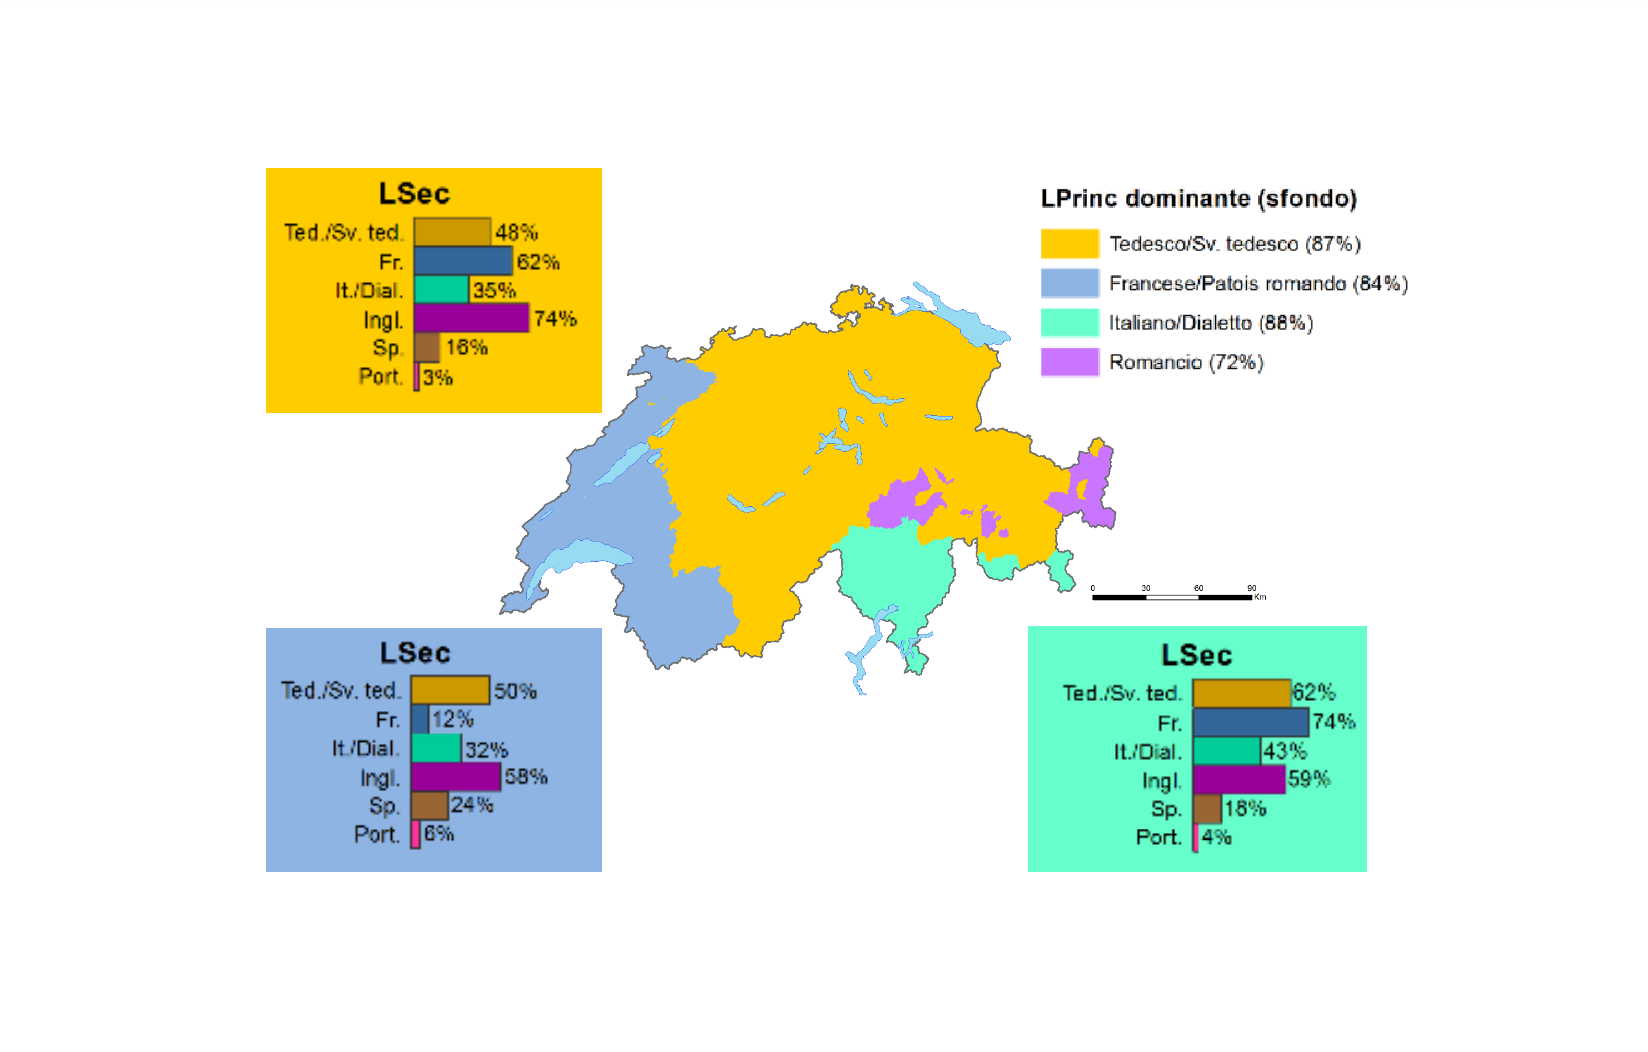 Le diffusione delle lingue principali e secondarie nelle 4 macro-regioni indicate su una cartina della Svizzera